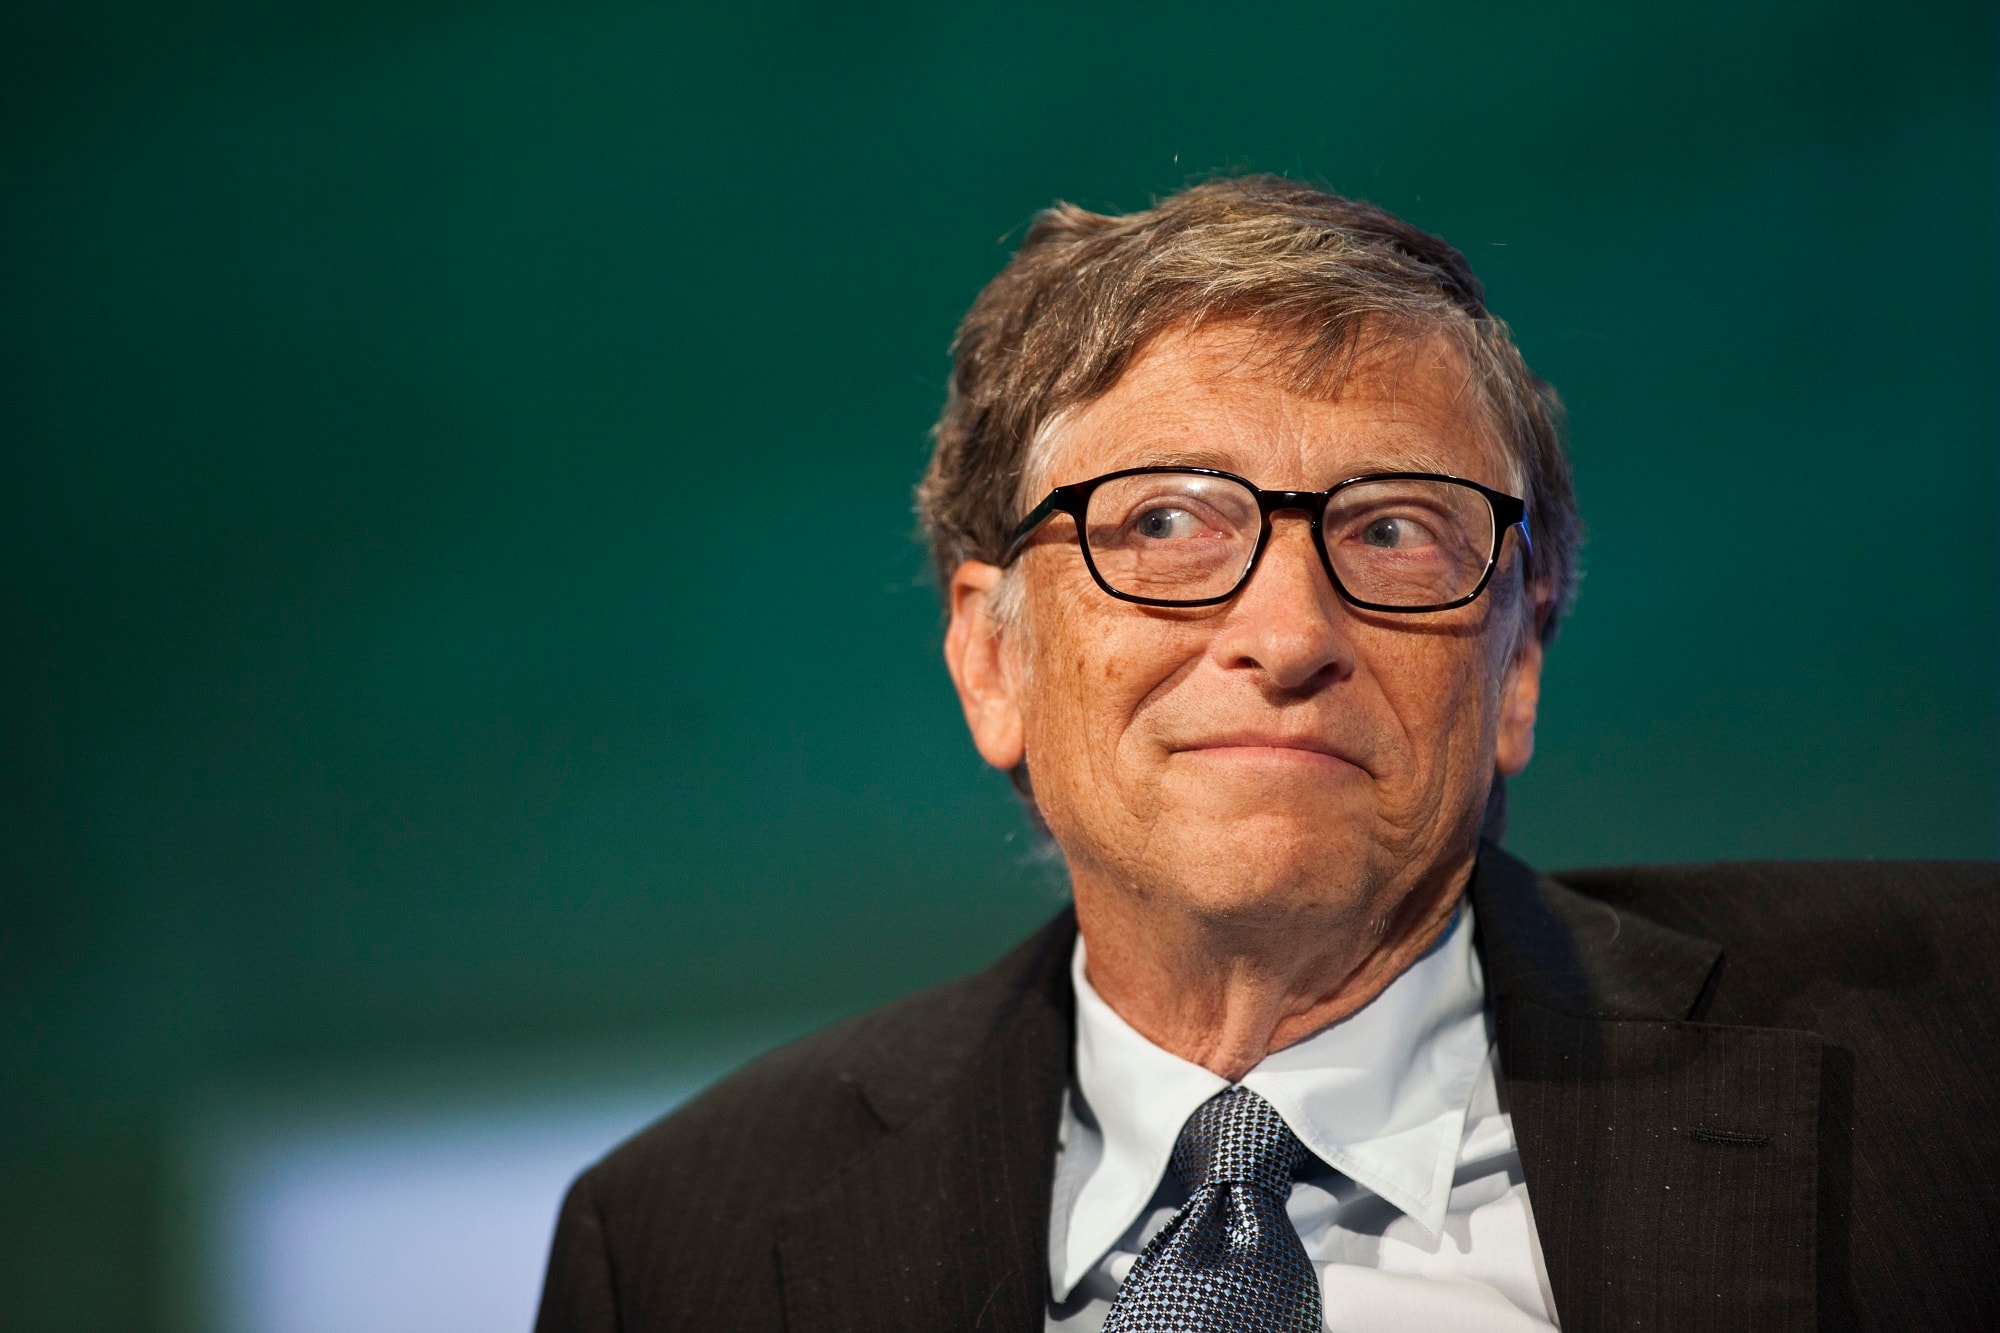 Bill Gates 在 1999 年的 15 項預測完全準確無誤實現